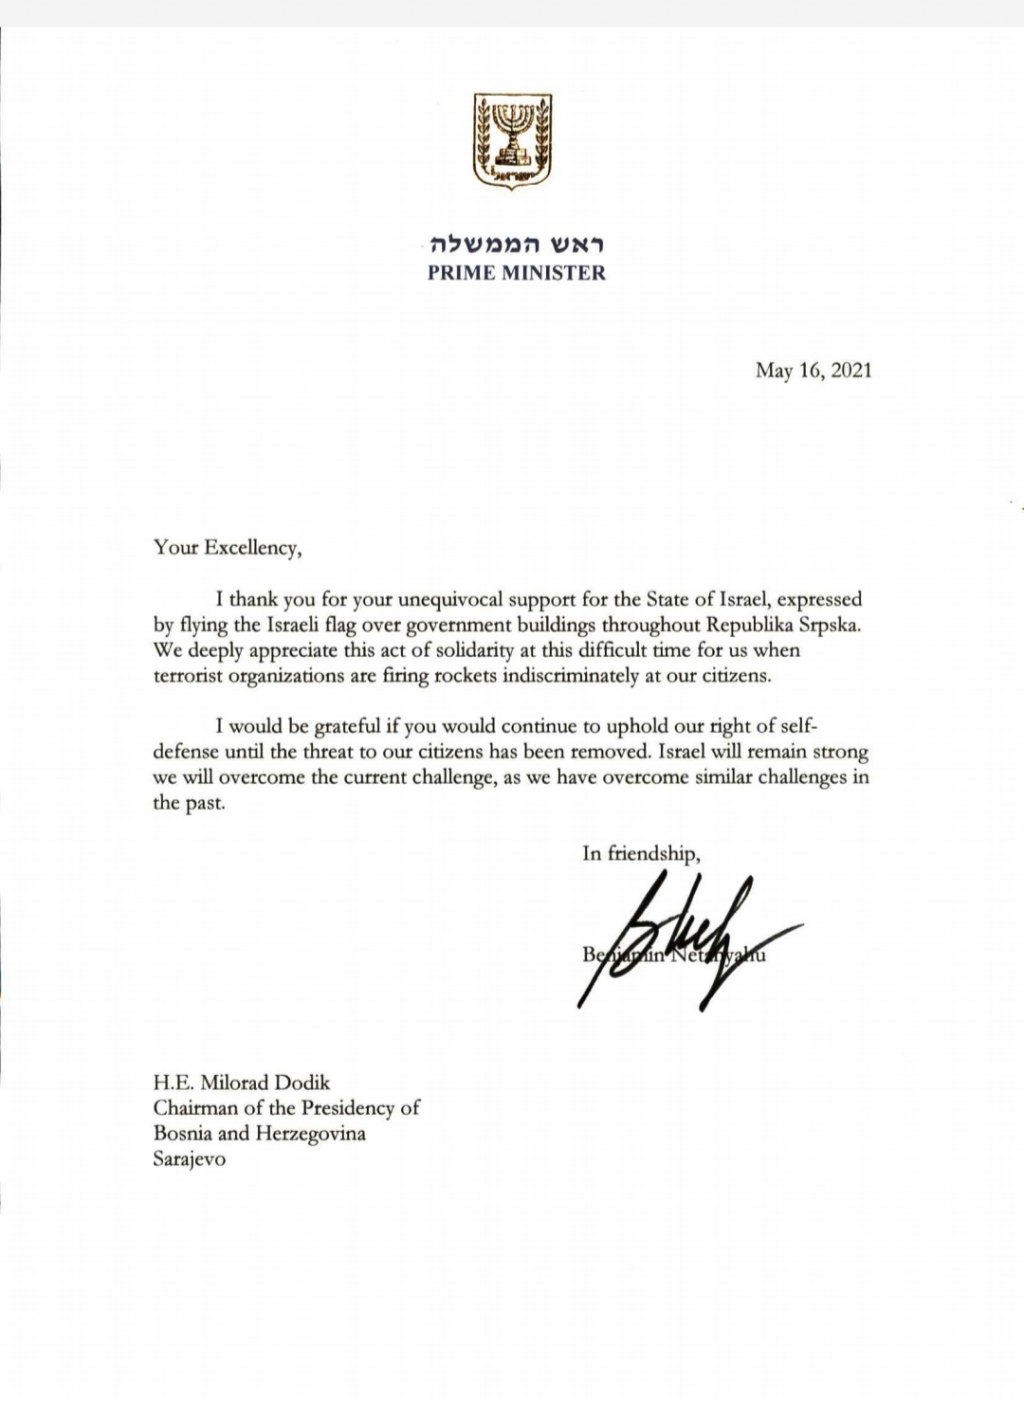 Нетанјахуово писмо захвалности Додику 